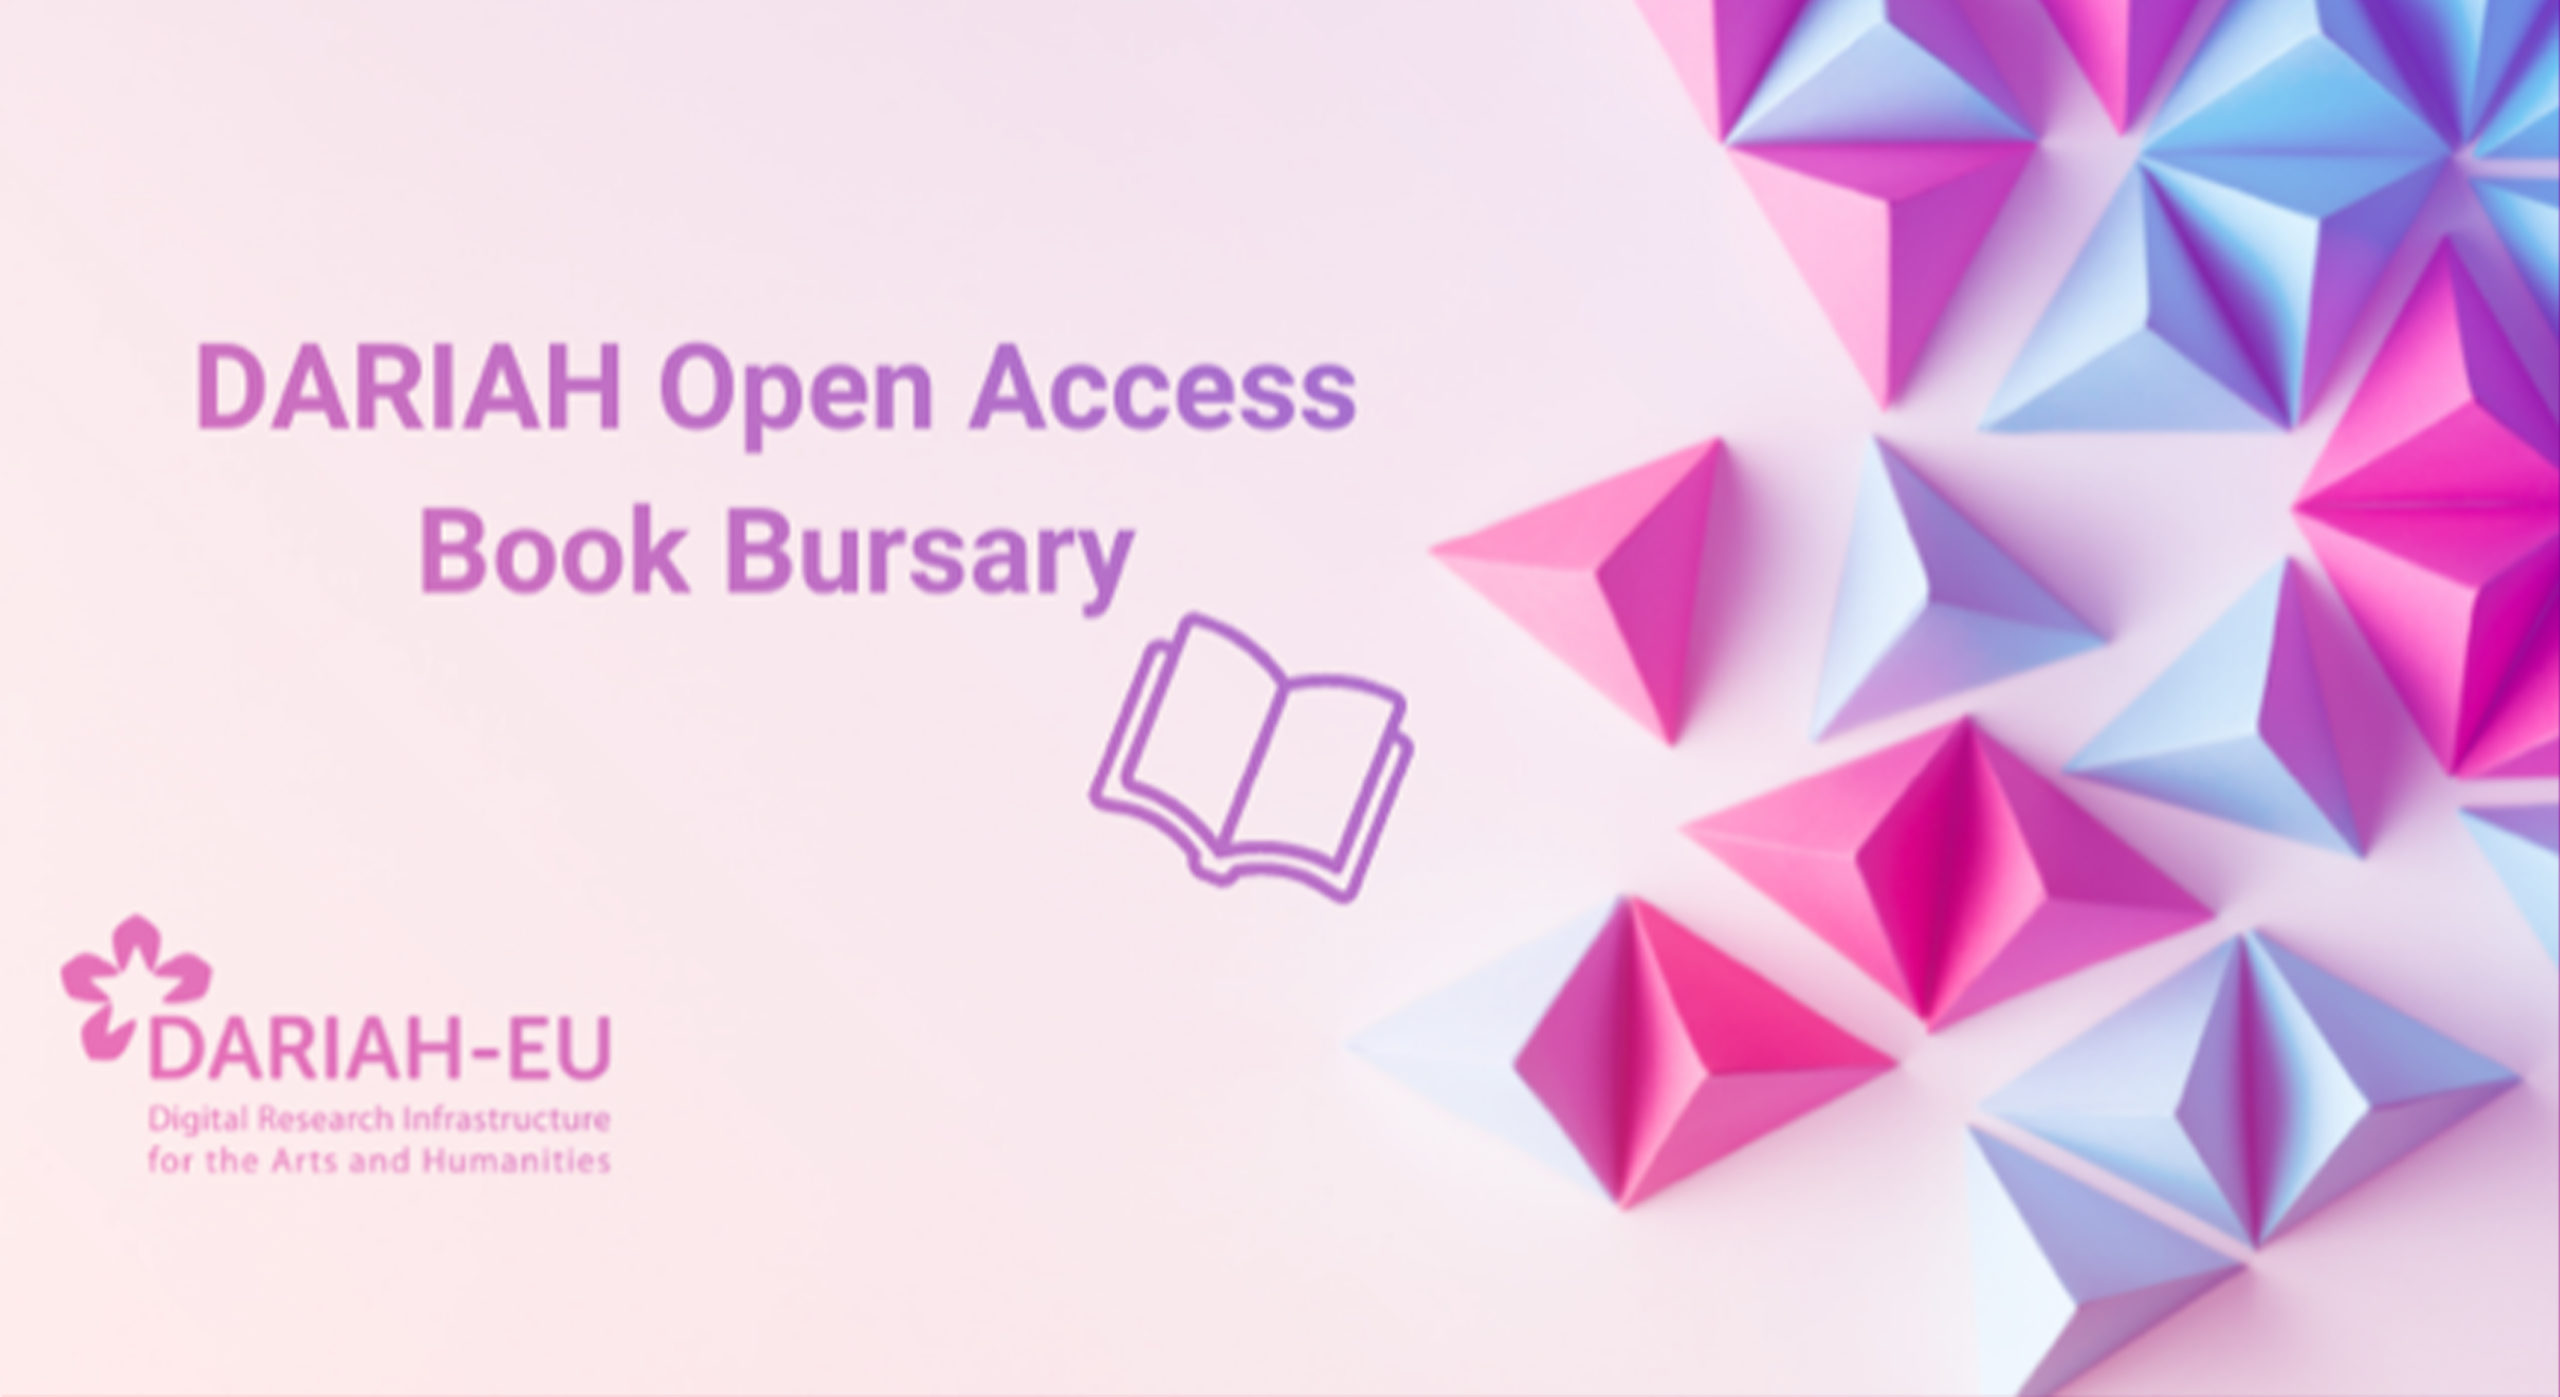 DARIAH-EU Open Access Book Bursary